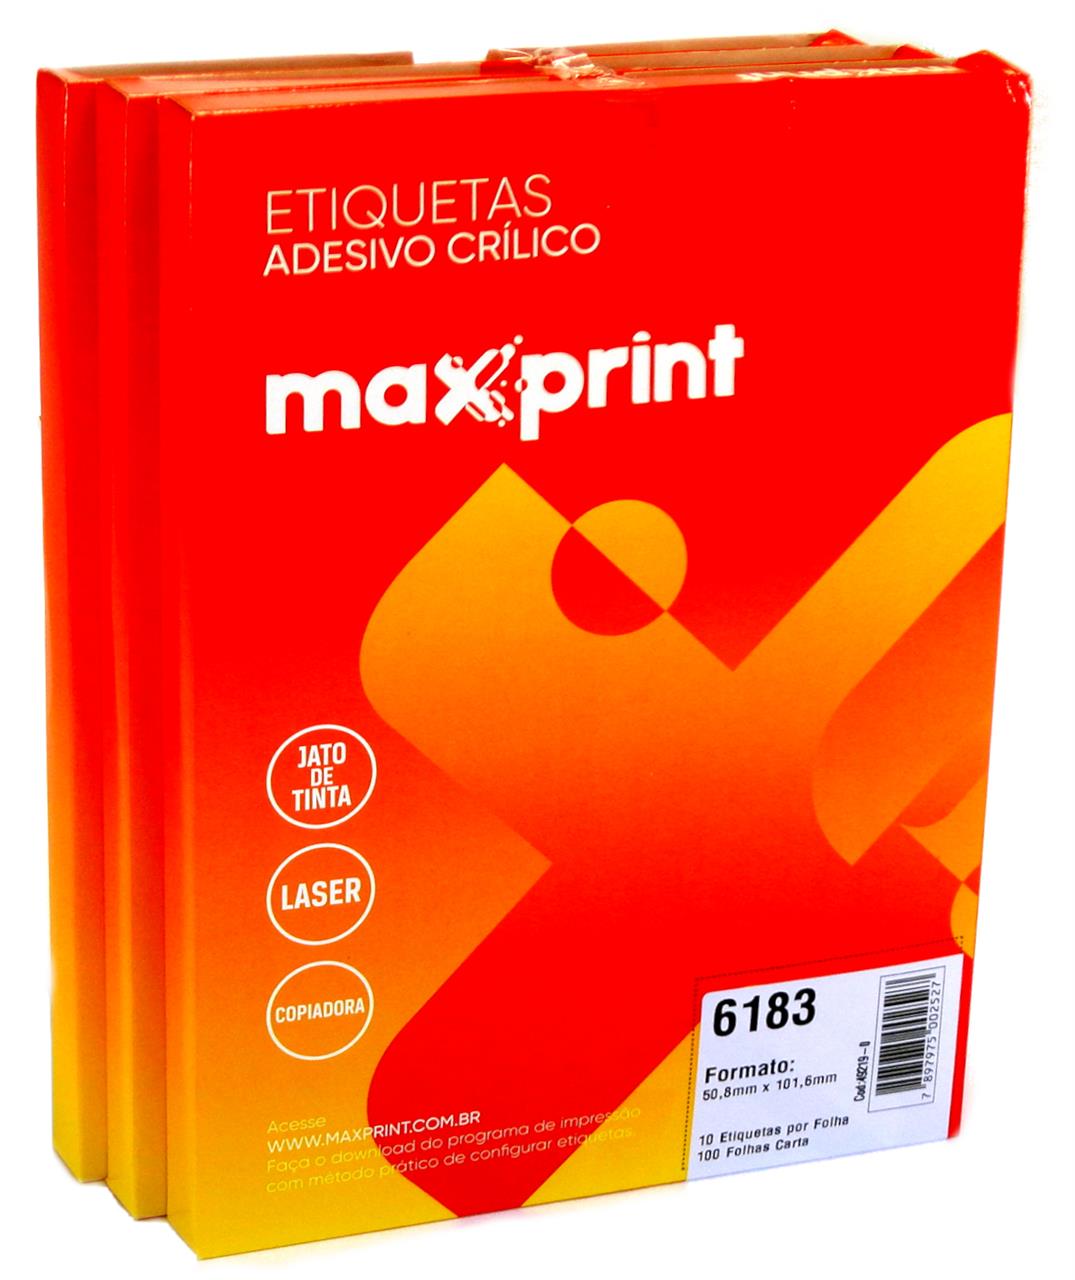 Etiquetas 6183 50,8mm x 101,6mm no Pack com 3 Caixas Maxprint